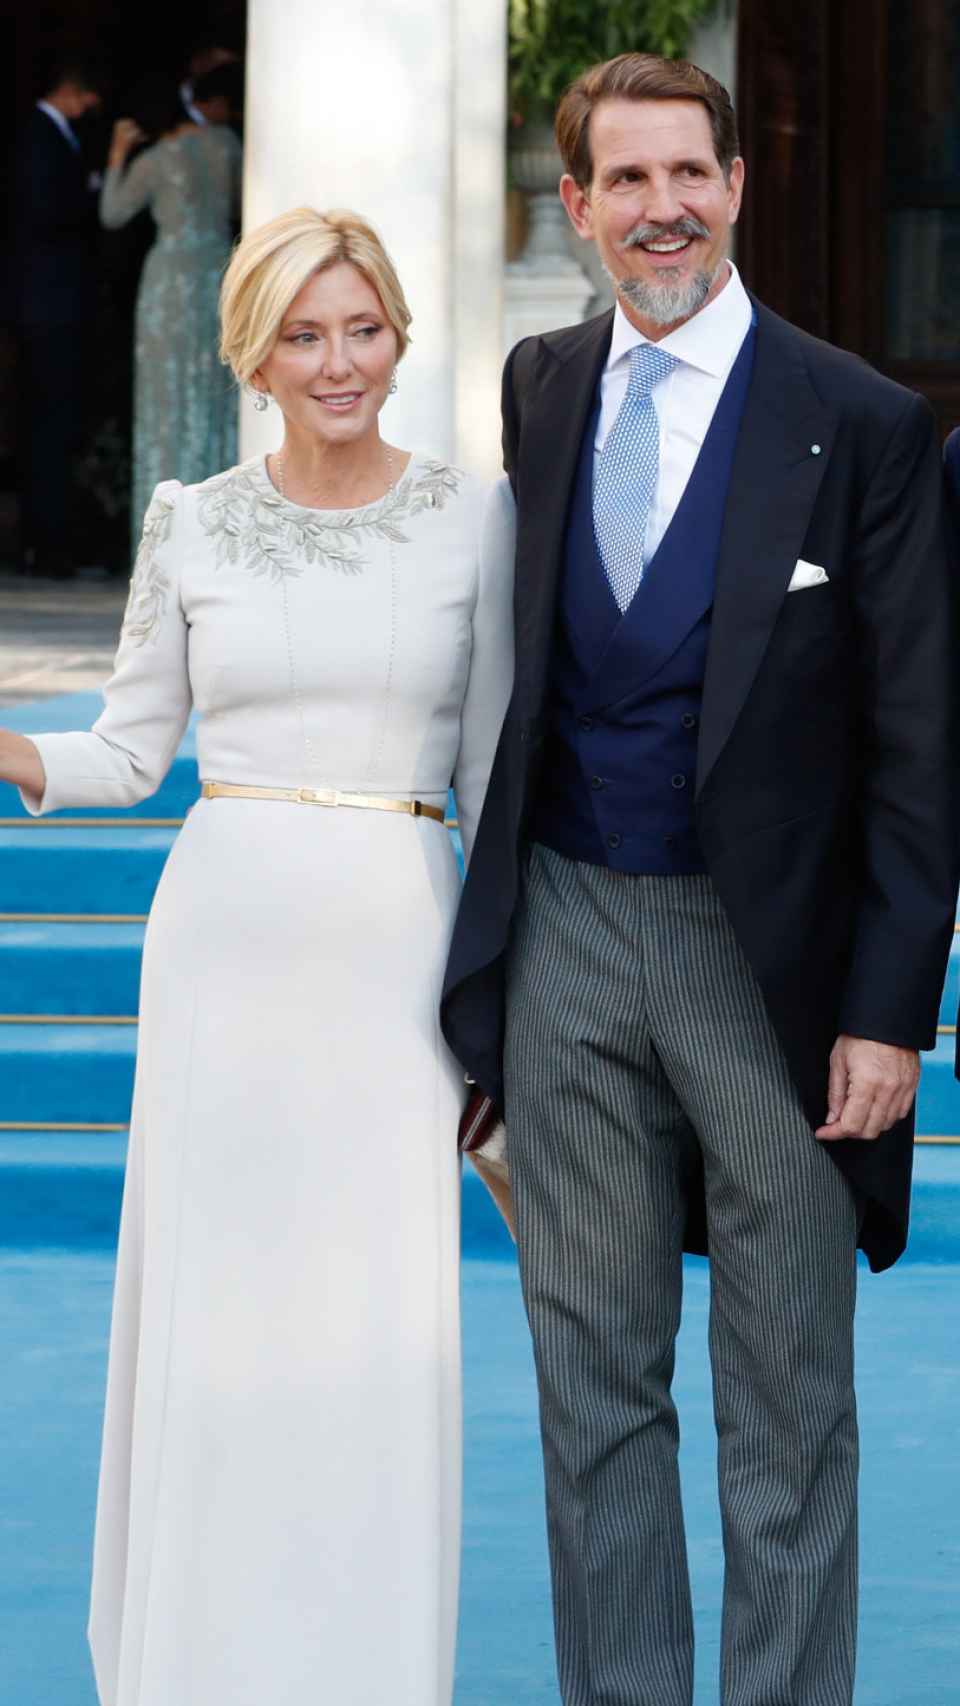 Pablo de Grecia y Marie-Chantal en la boda de Felipe de Grecia, en 2021 en Atenas.